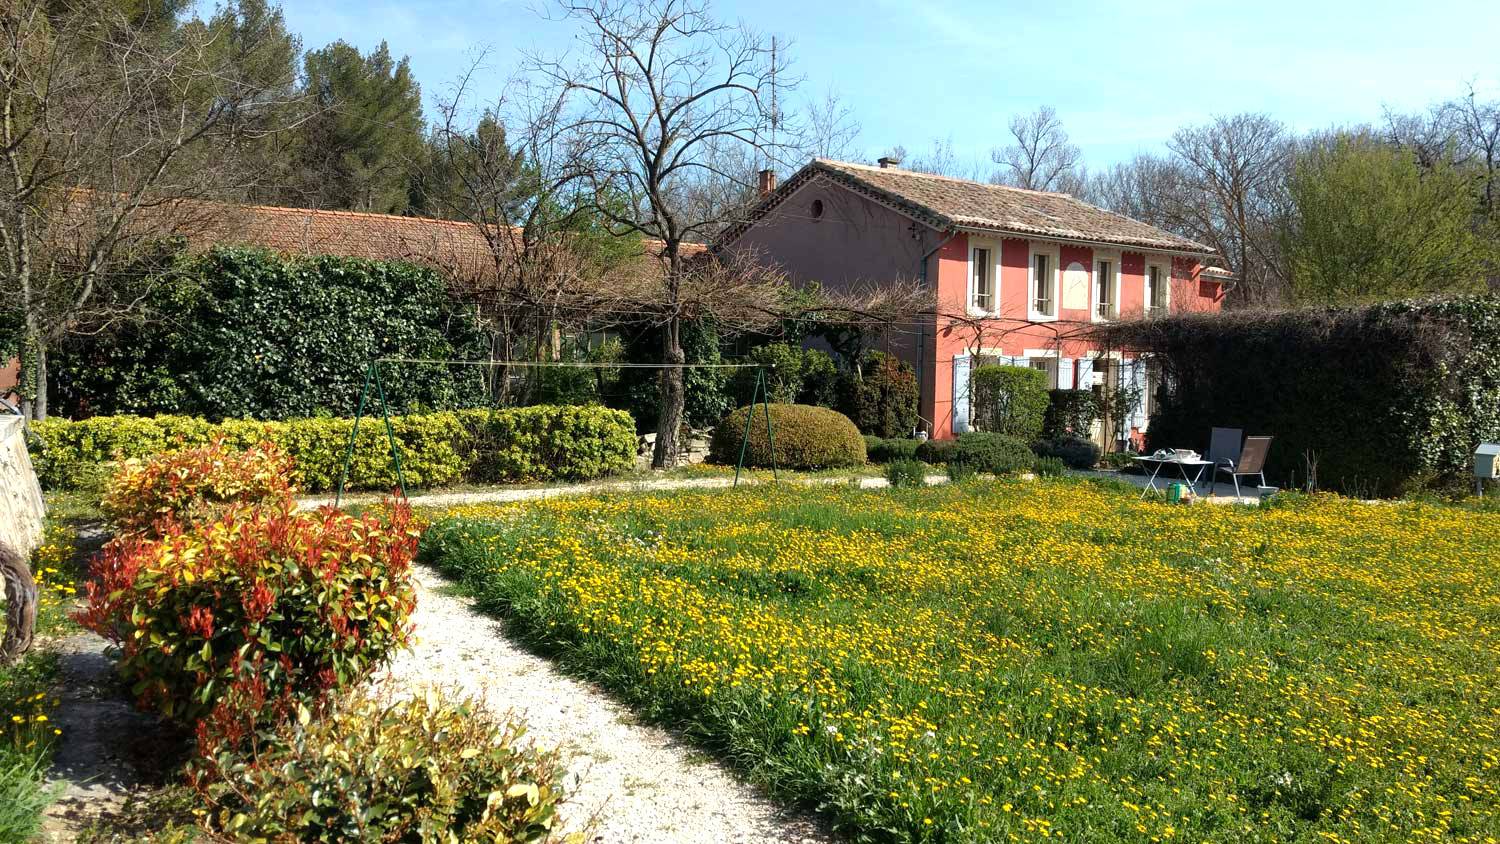 Vente Vaucluse : Maison de maître début XIXème siècle avec vue remarquable à vendre à Carpentras